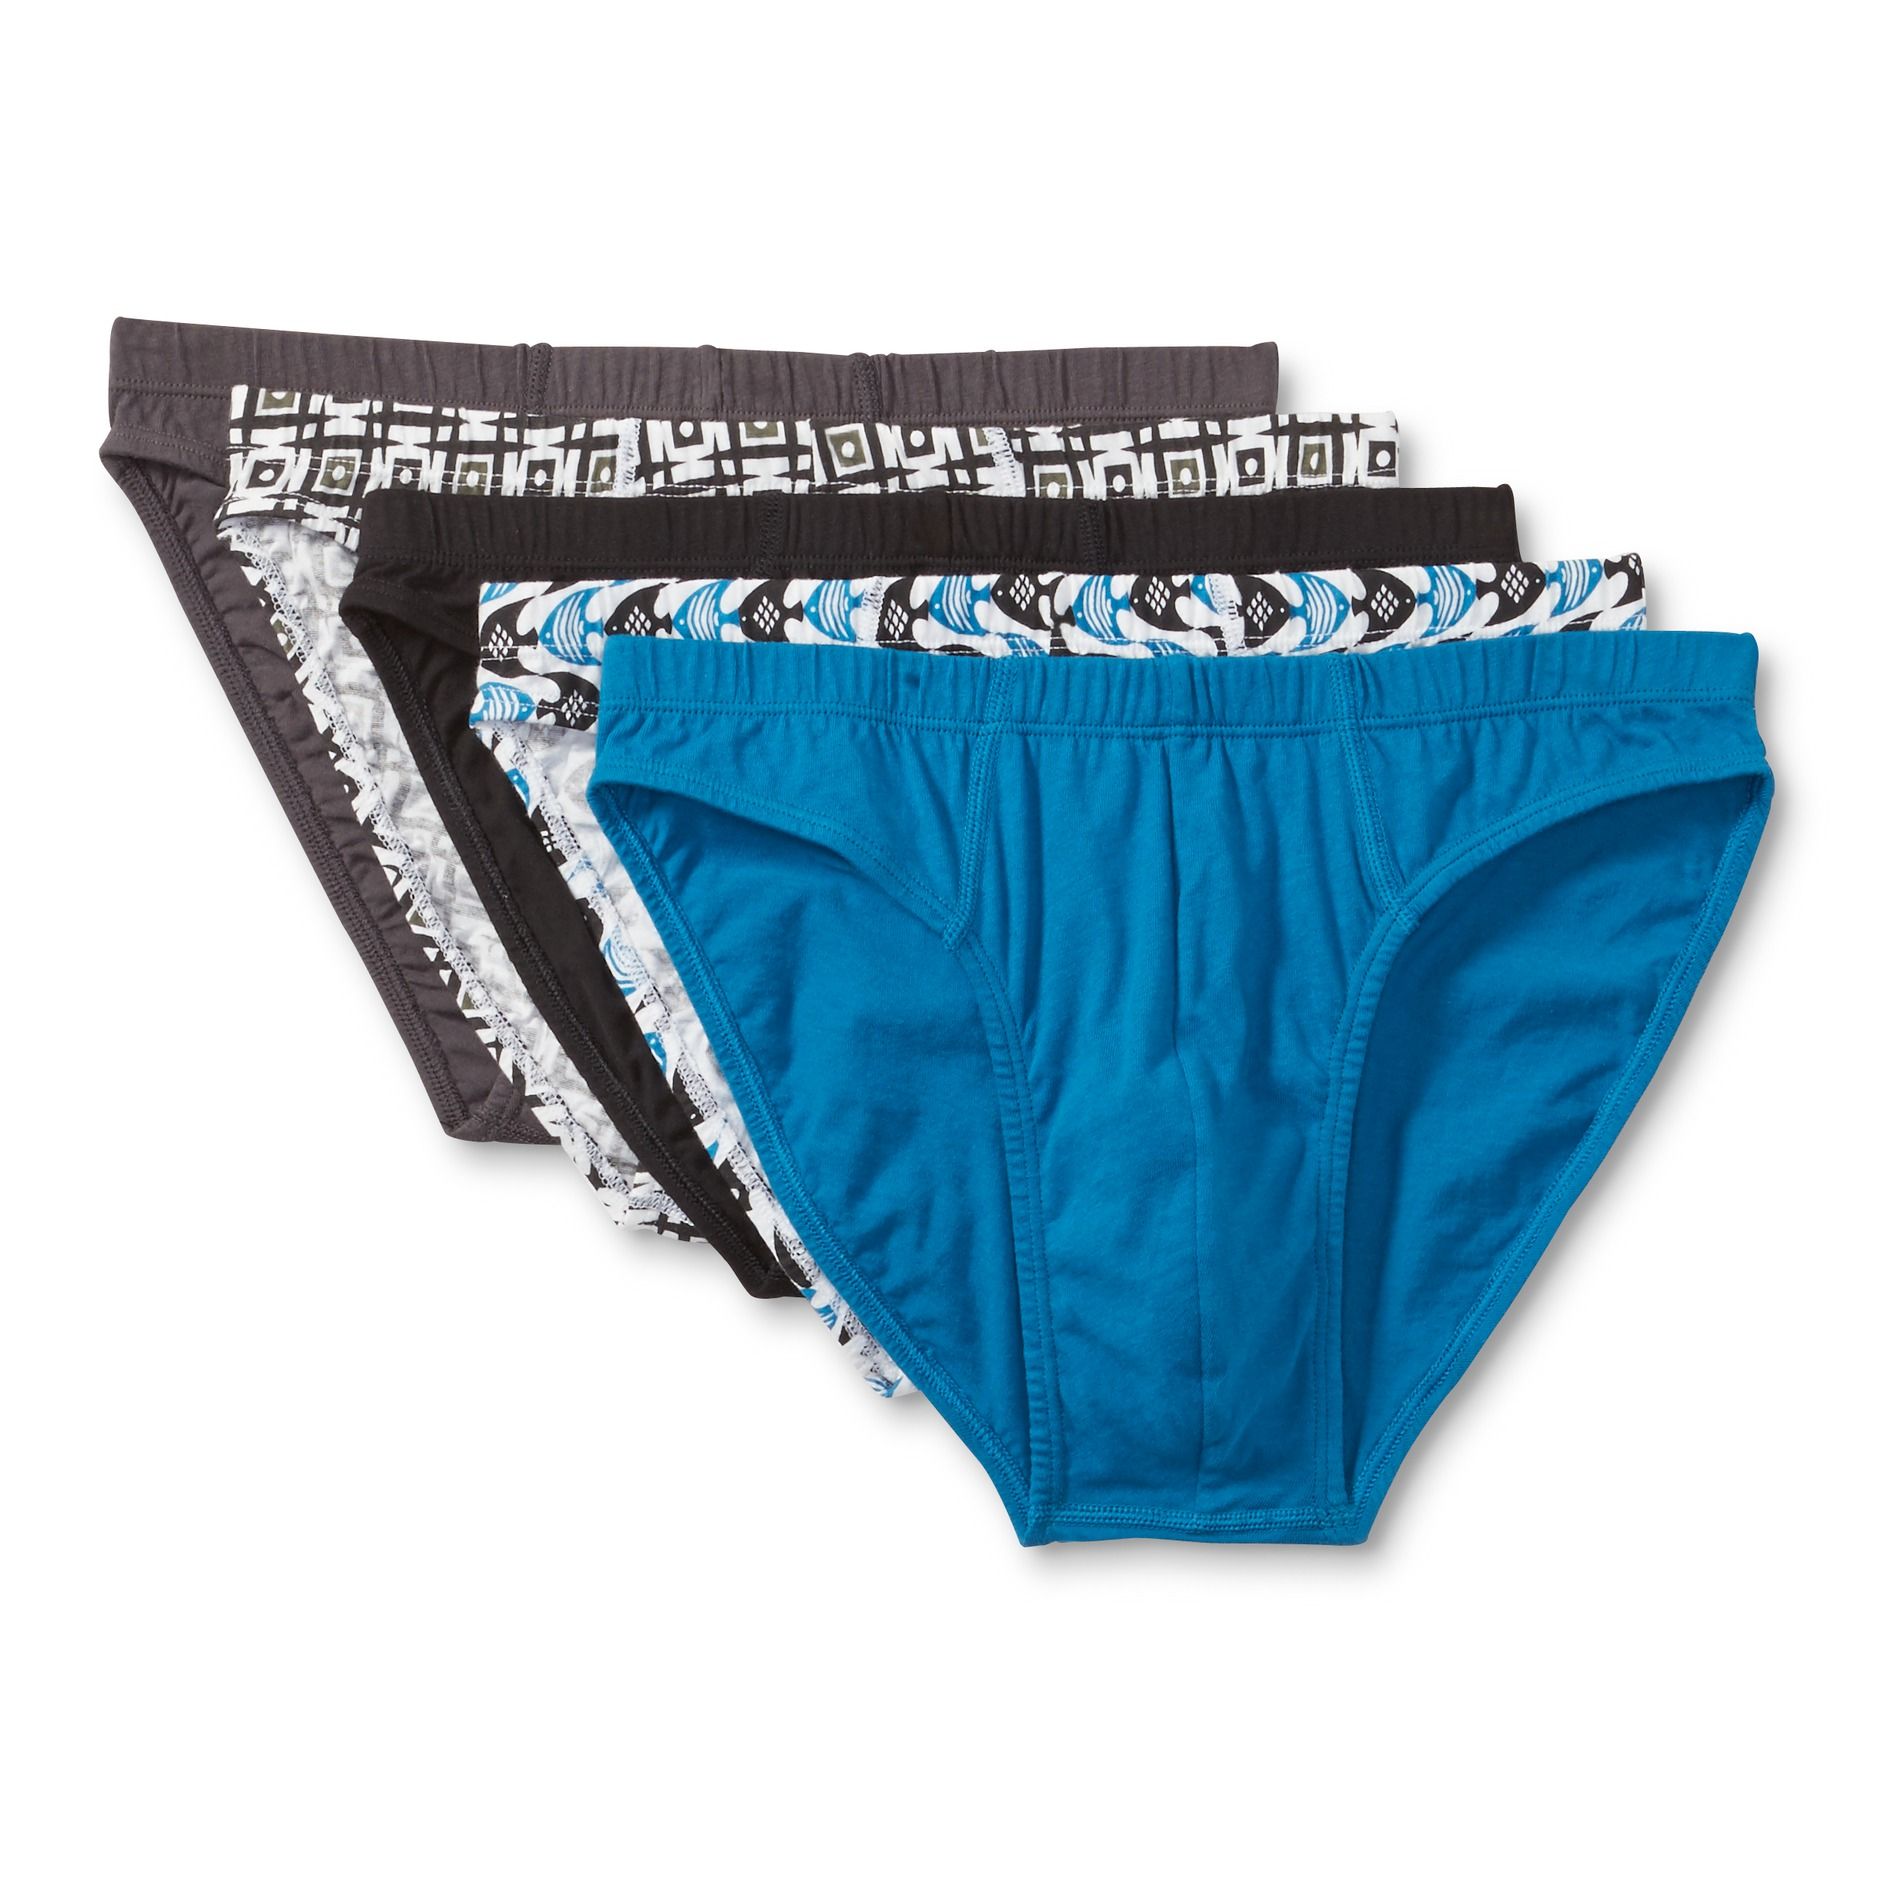 Barrington silk bikini underwear